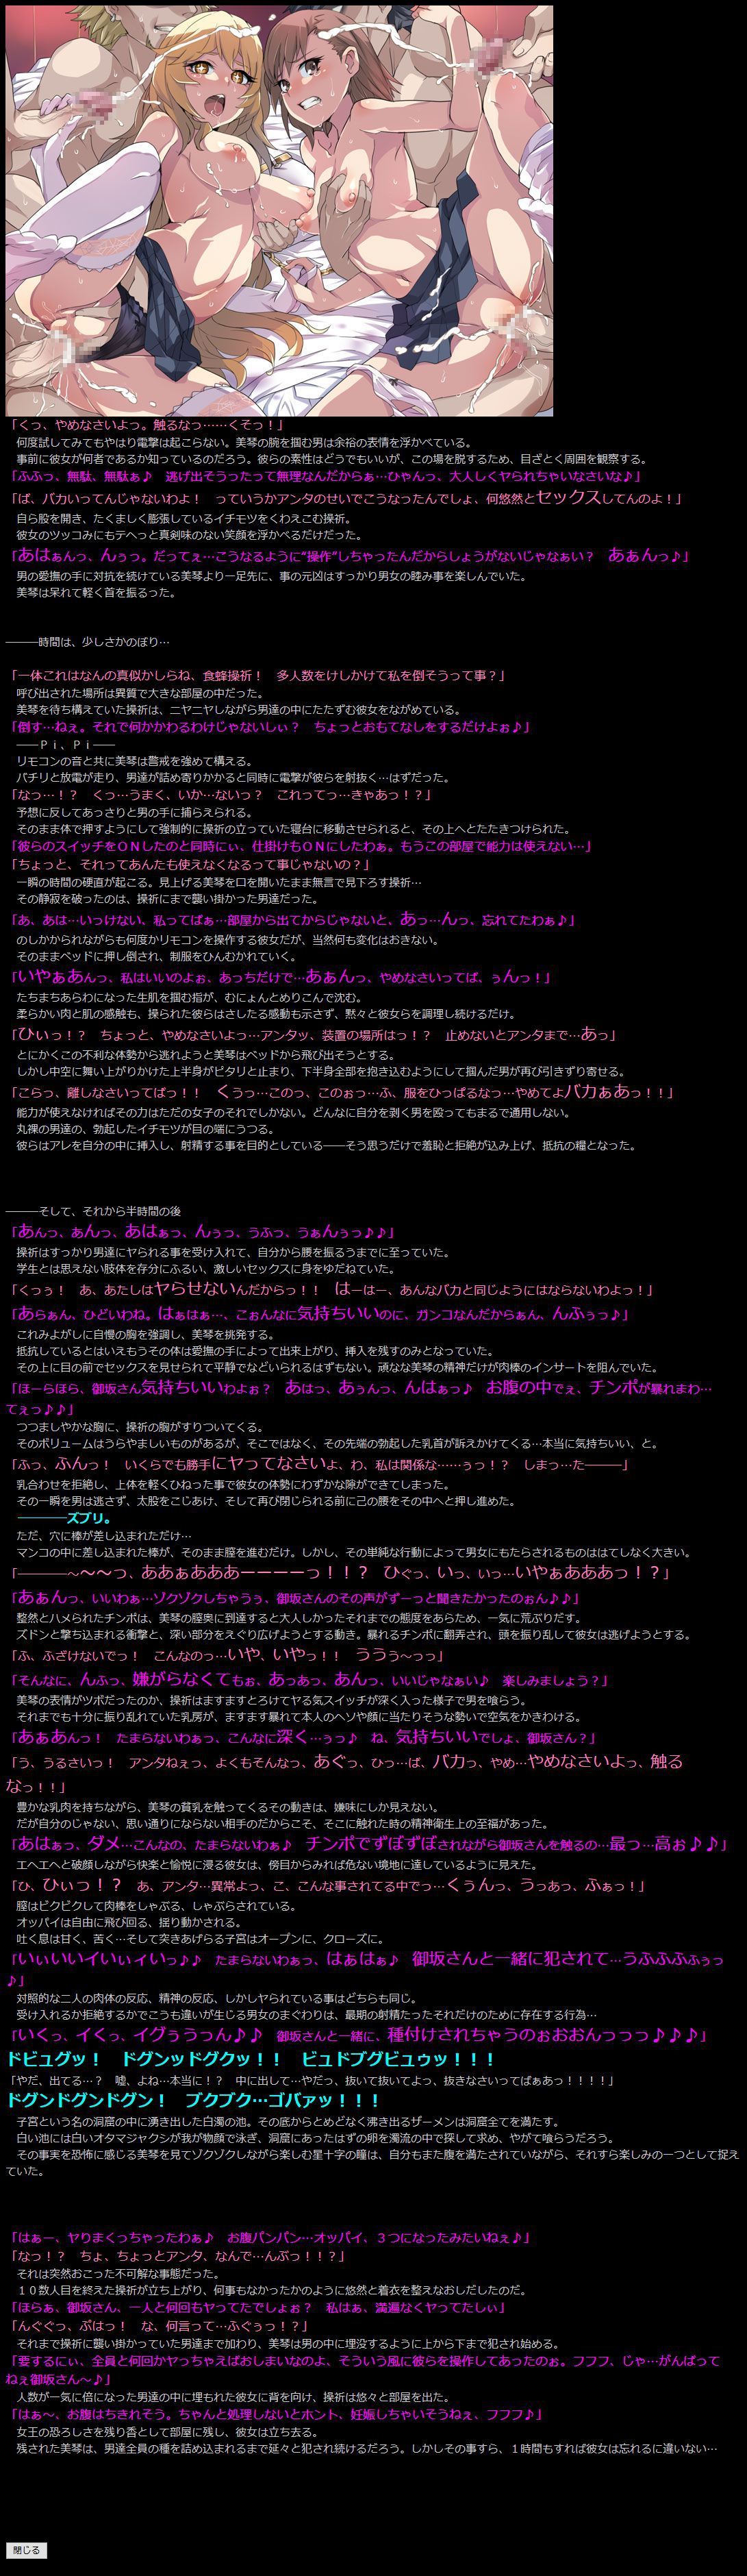 [LolitaChannel (Arigase Shinji)] Yuumei Chara Kannou Shousetsu CG Shuu No. 263!! Toaru Kagaku no Railgun S HaaHaa CG Shuu (Toaru Kagaku no Railgun S) [LolitaChannel (ありがせしんじ)] 有名キャラ官能小説CG集 第263弾 とあ○科学の超電磁砲SはぁはぁCG集 (とある科学の超電磁砲S) 2